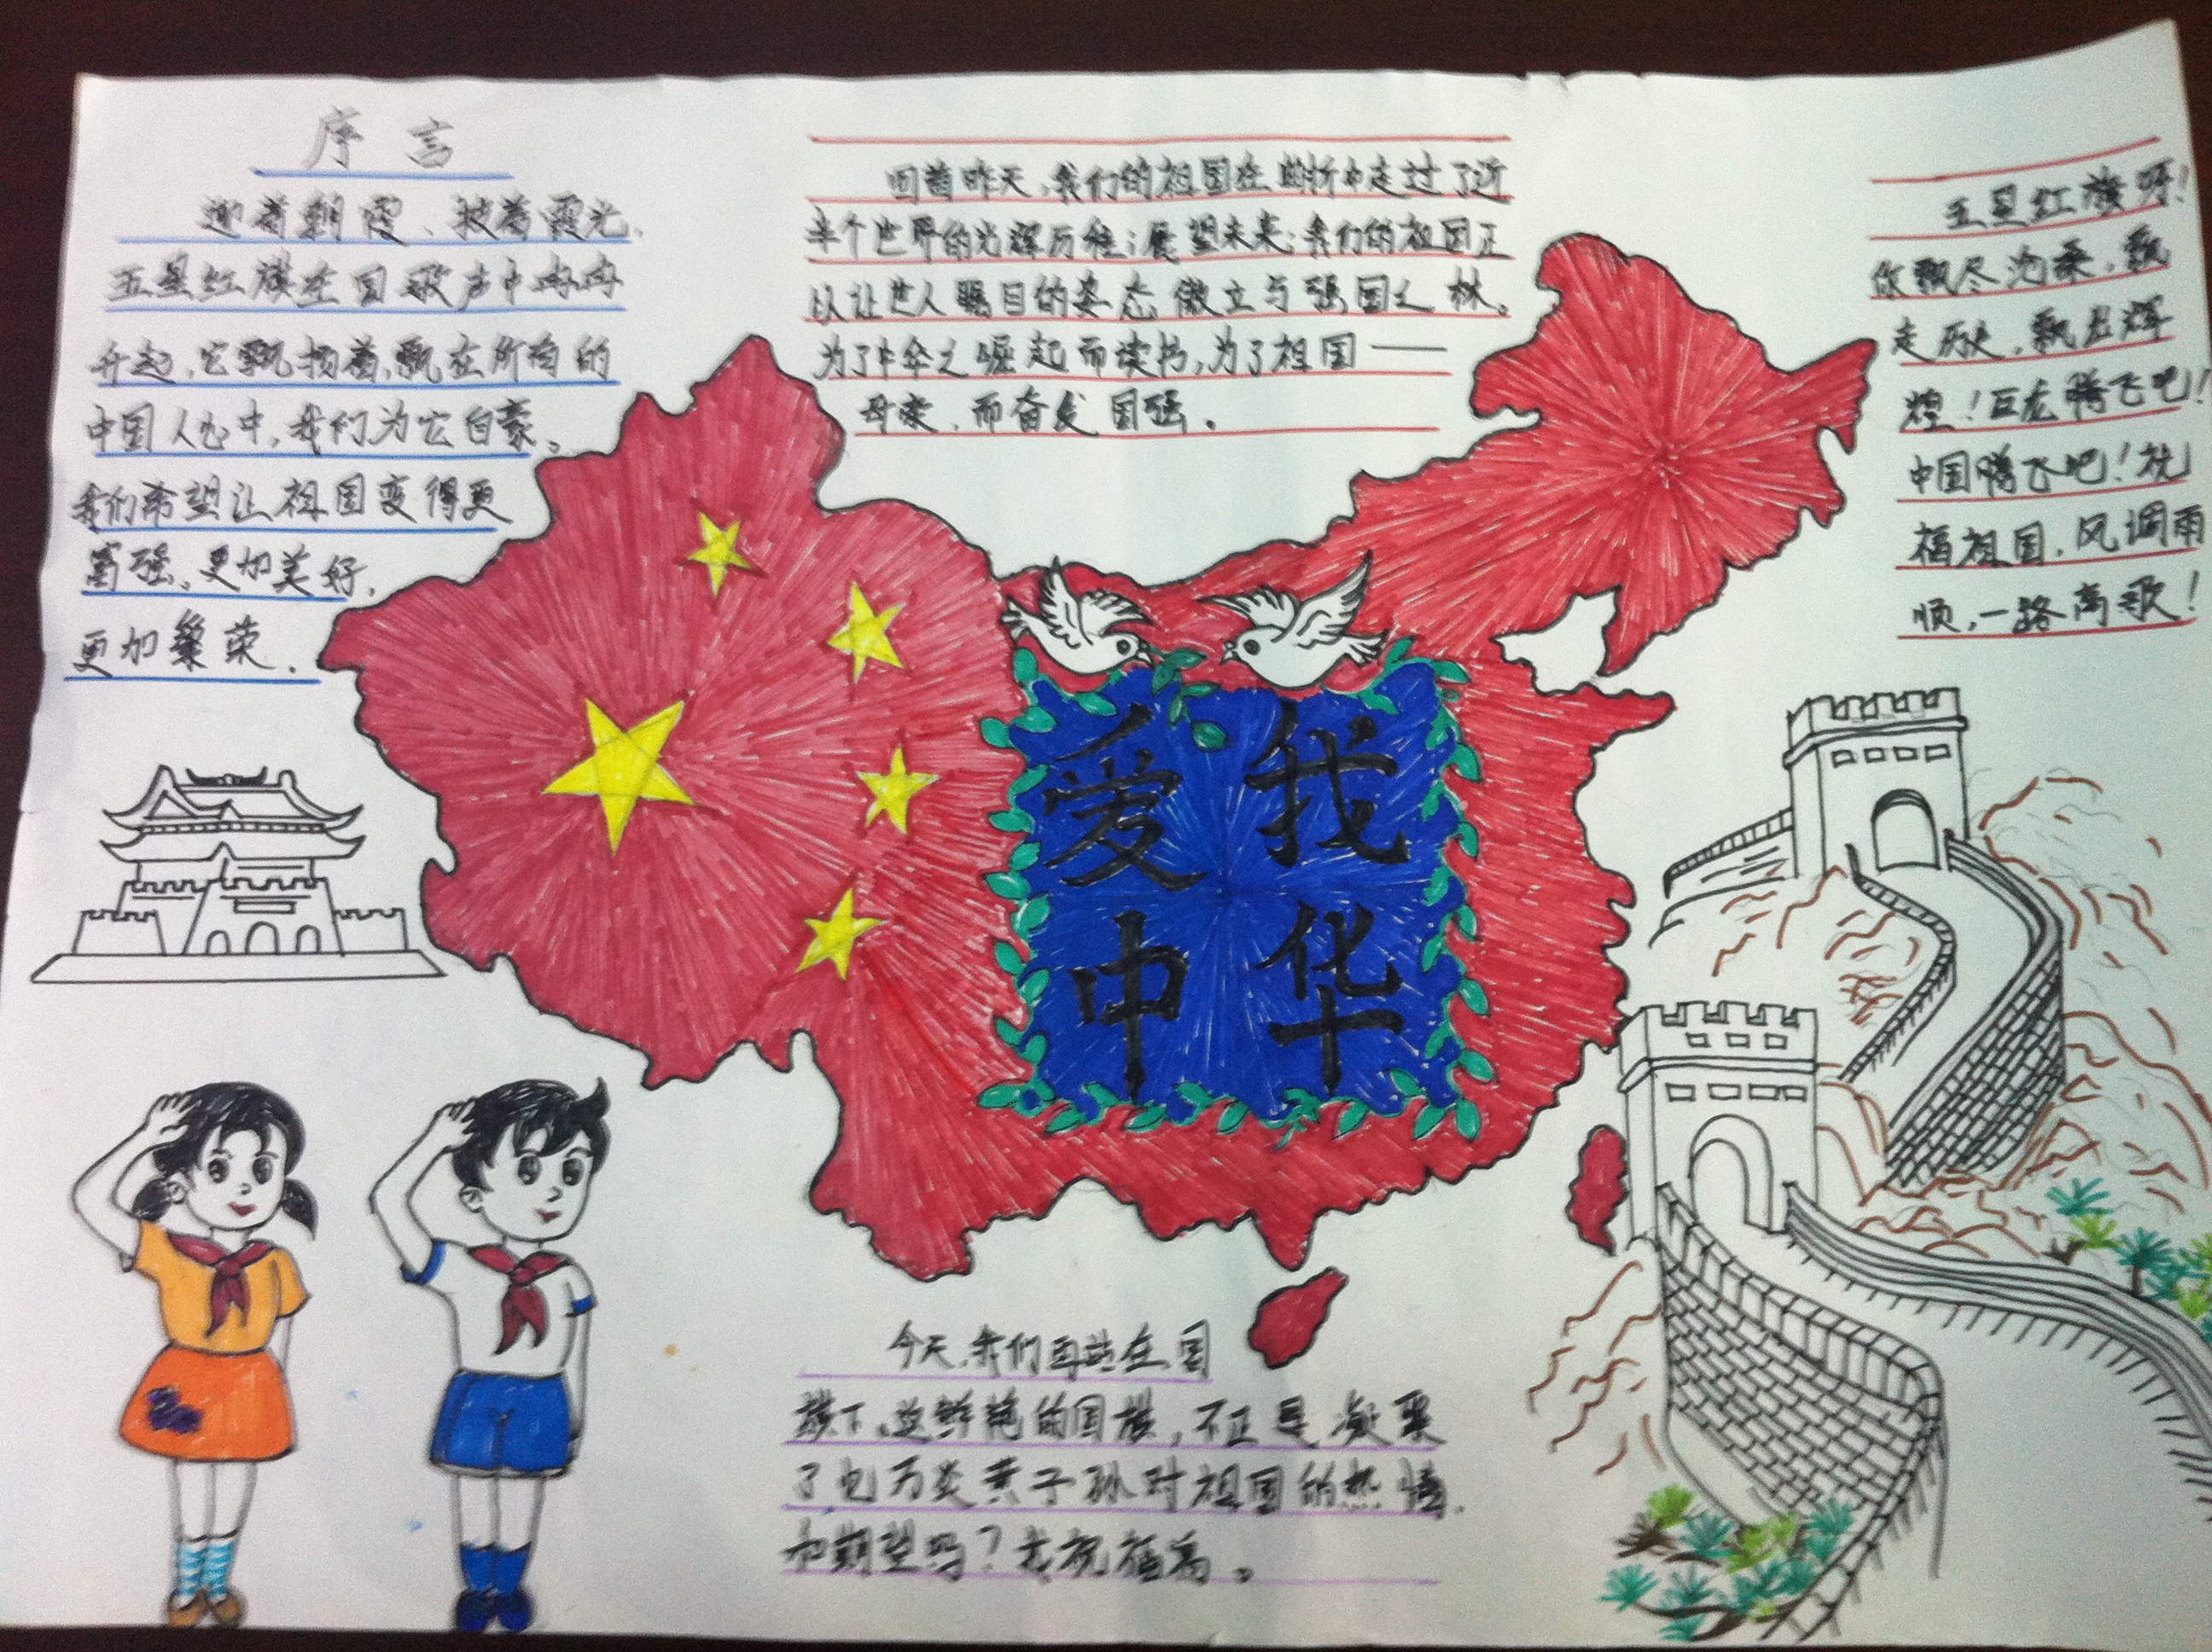 祖国在我心中----手抄报展 - 红领巾相约中国梦动态图片